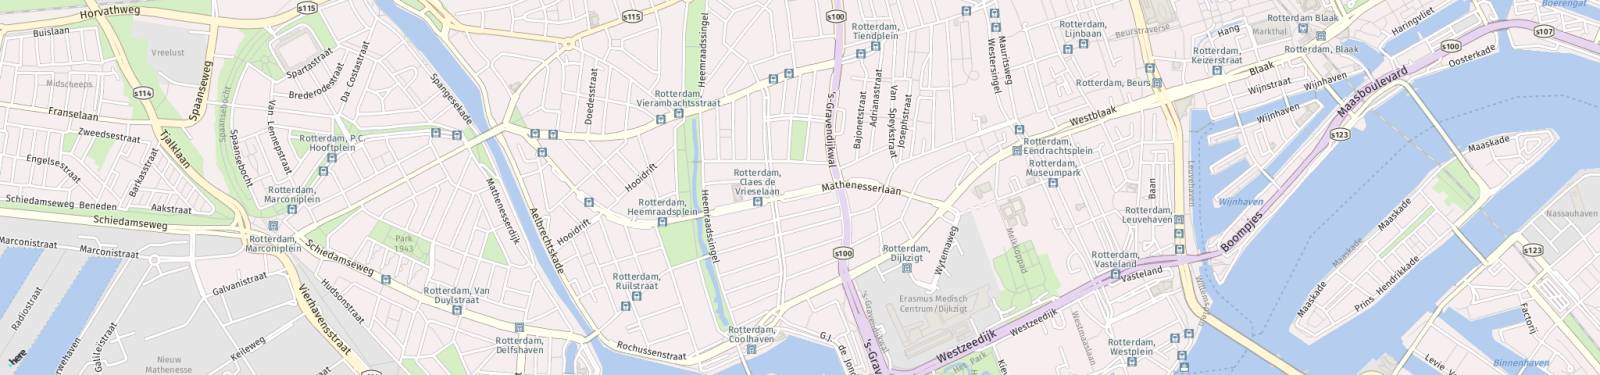 Kaart met locatie Appartement Mathenesserlaan